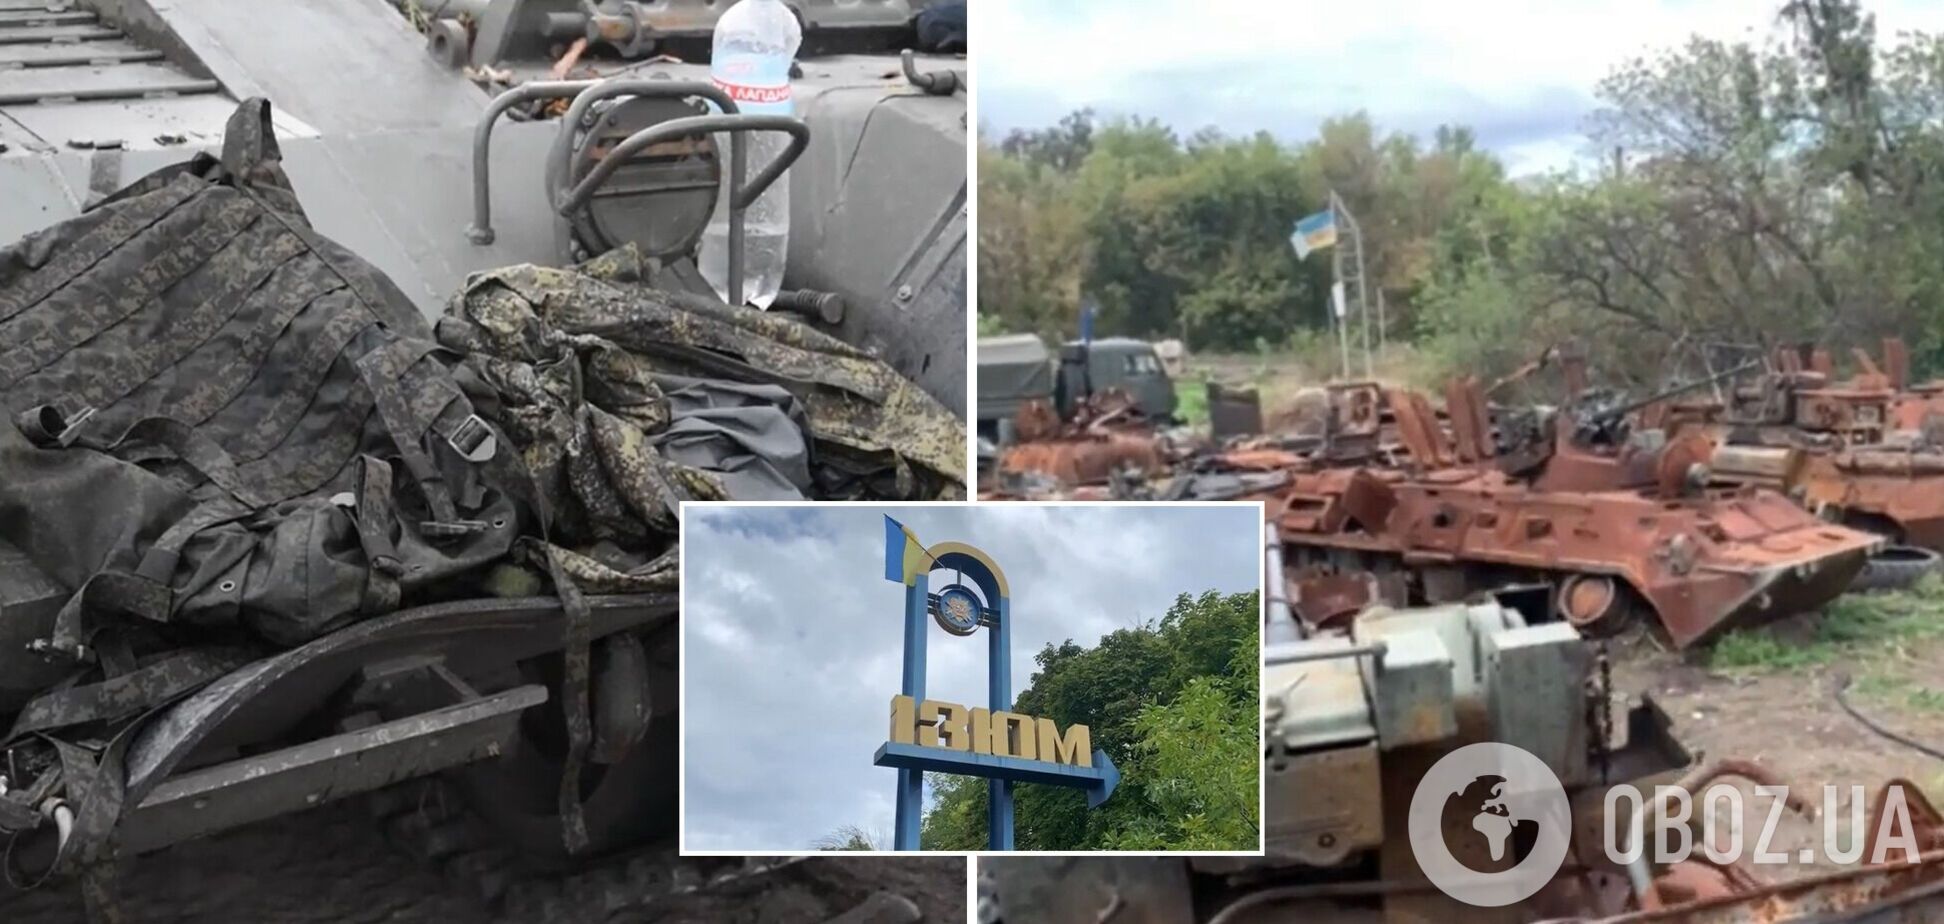 'Бежали, как мыши': украинские десантники рассказали, как освобождали Изюм от оккупантов. Видео